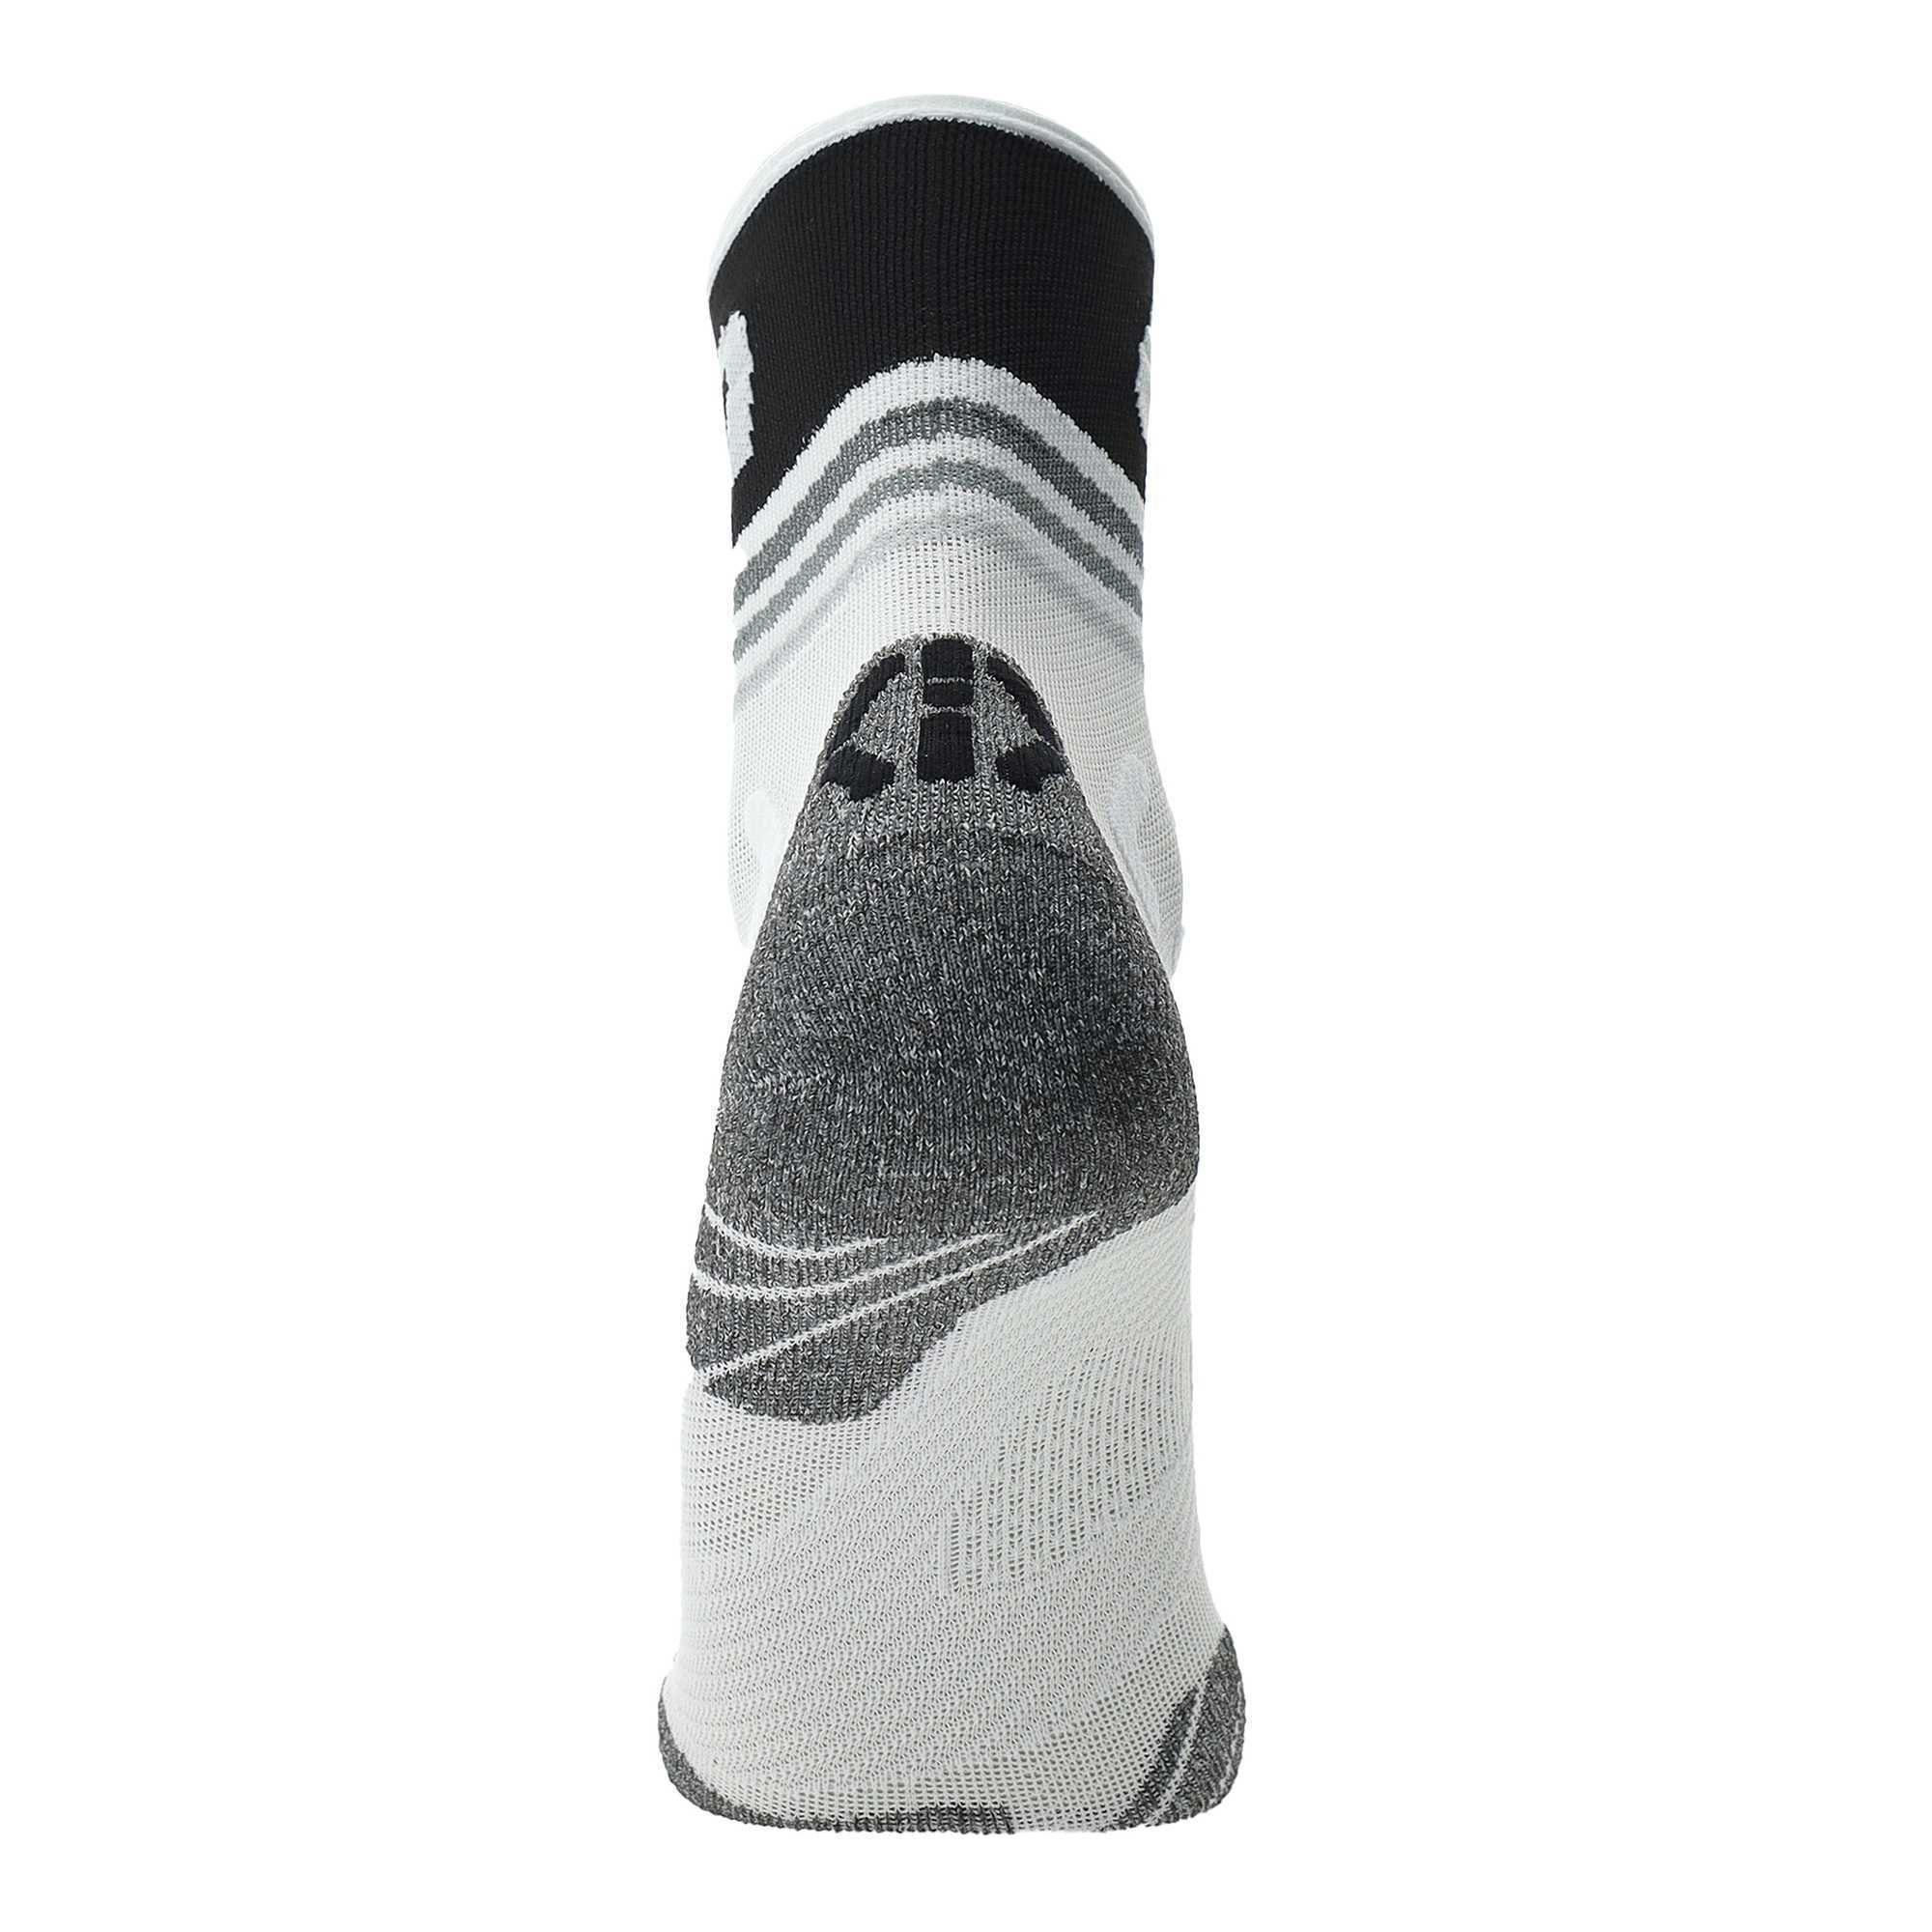 White Running - Sportsocken - Sneaker One Socks, UYN Short Herren Black Socken